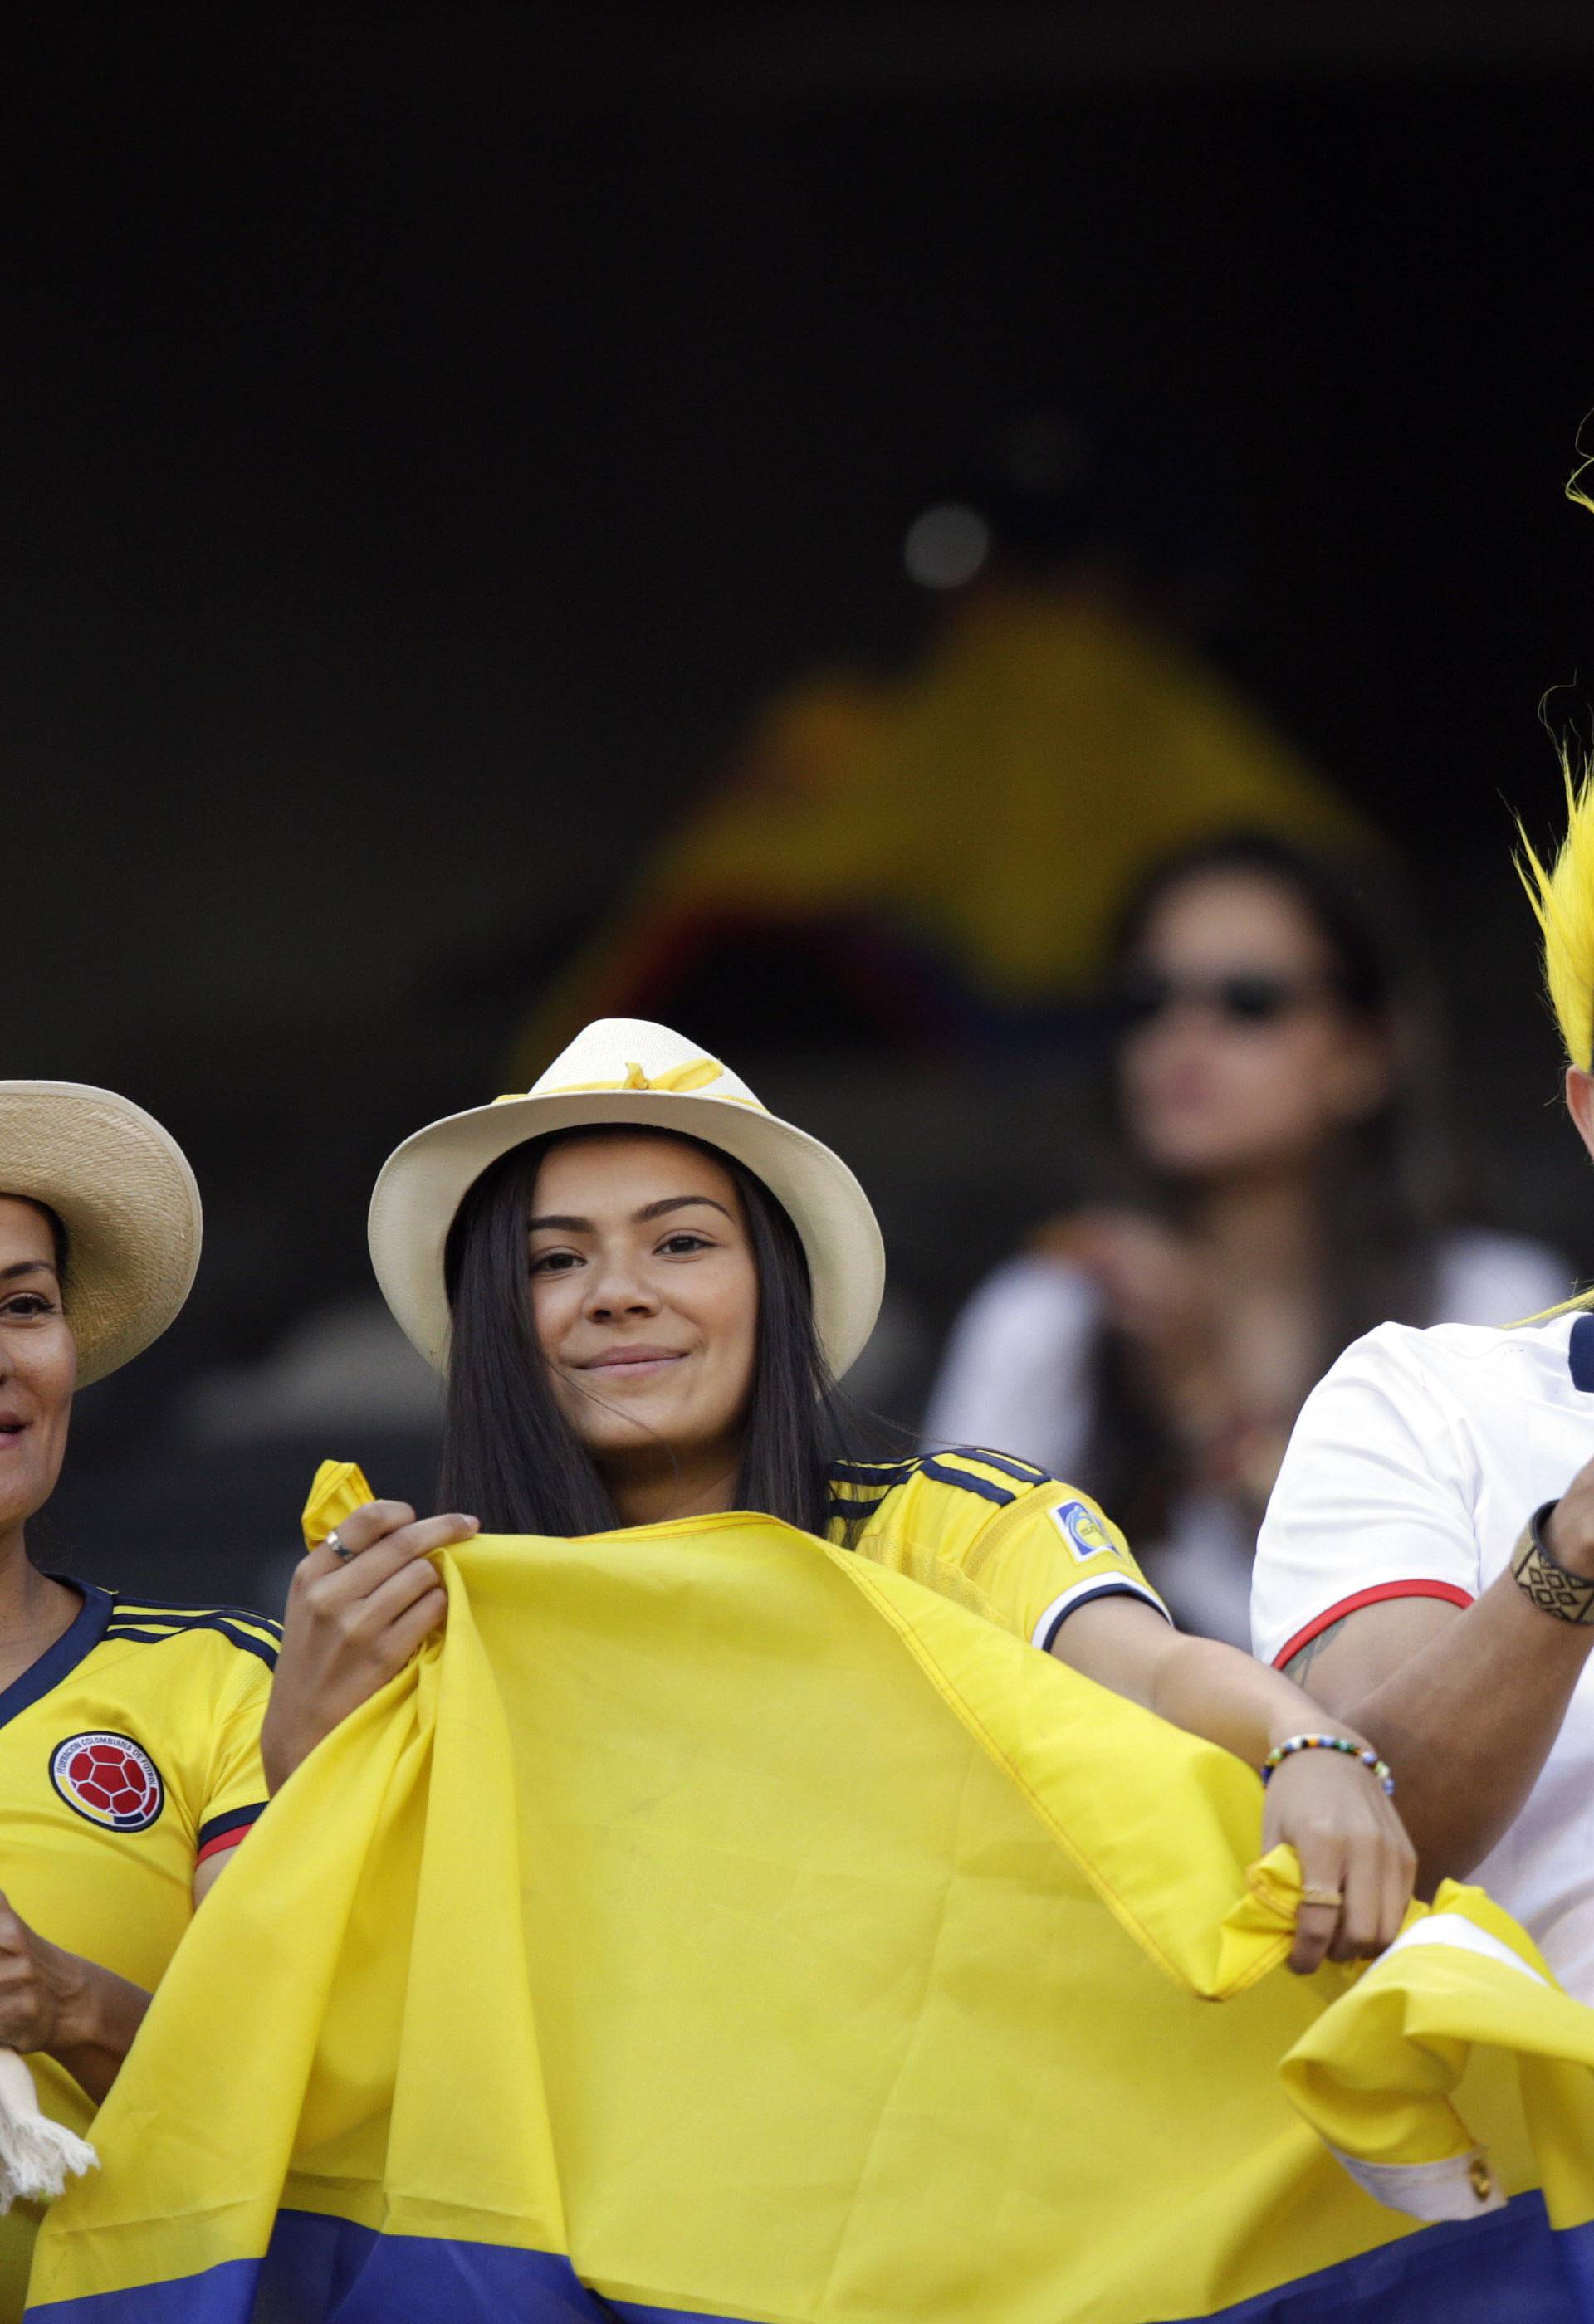 Soccer: 2016 Copa America Centenario-Peru at Colombia